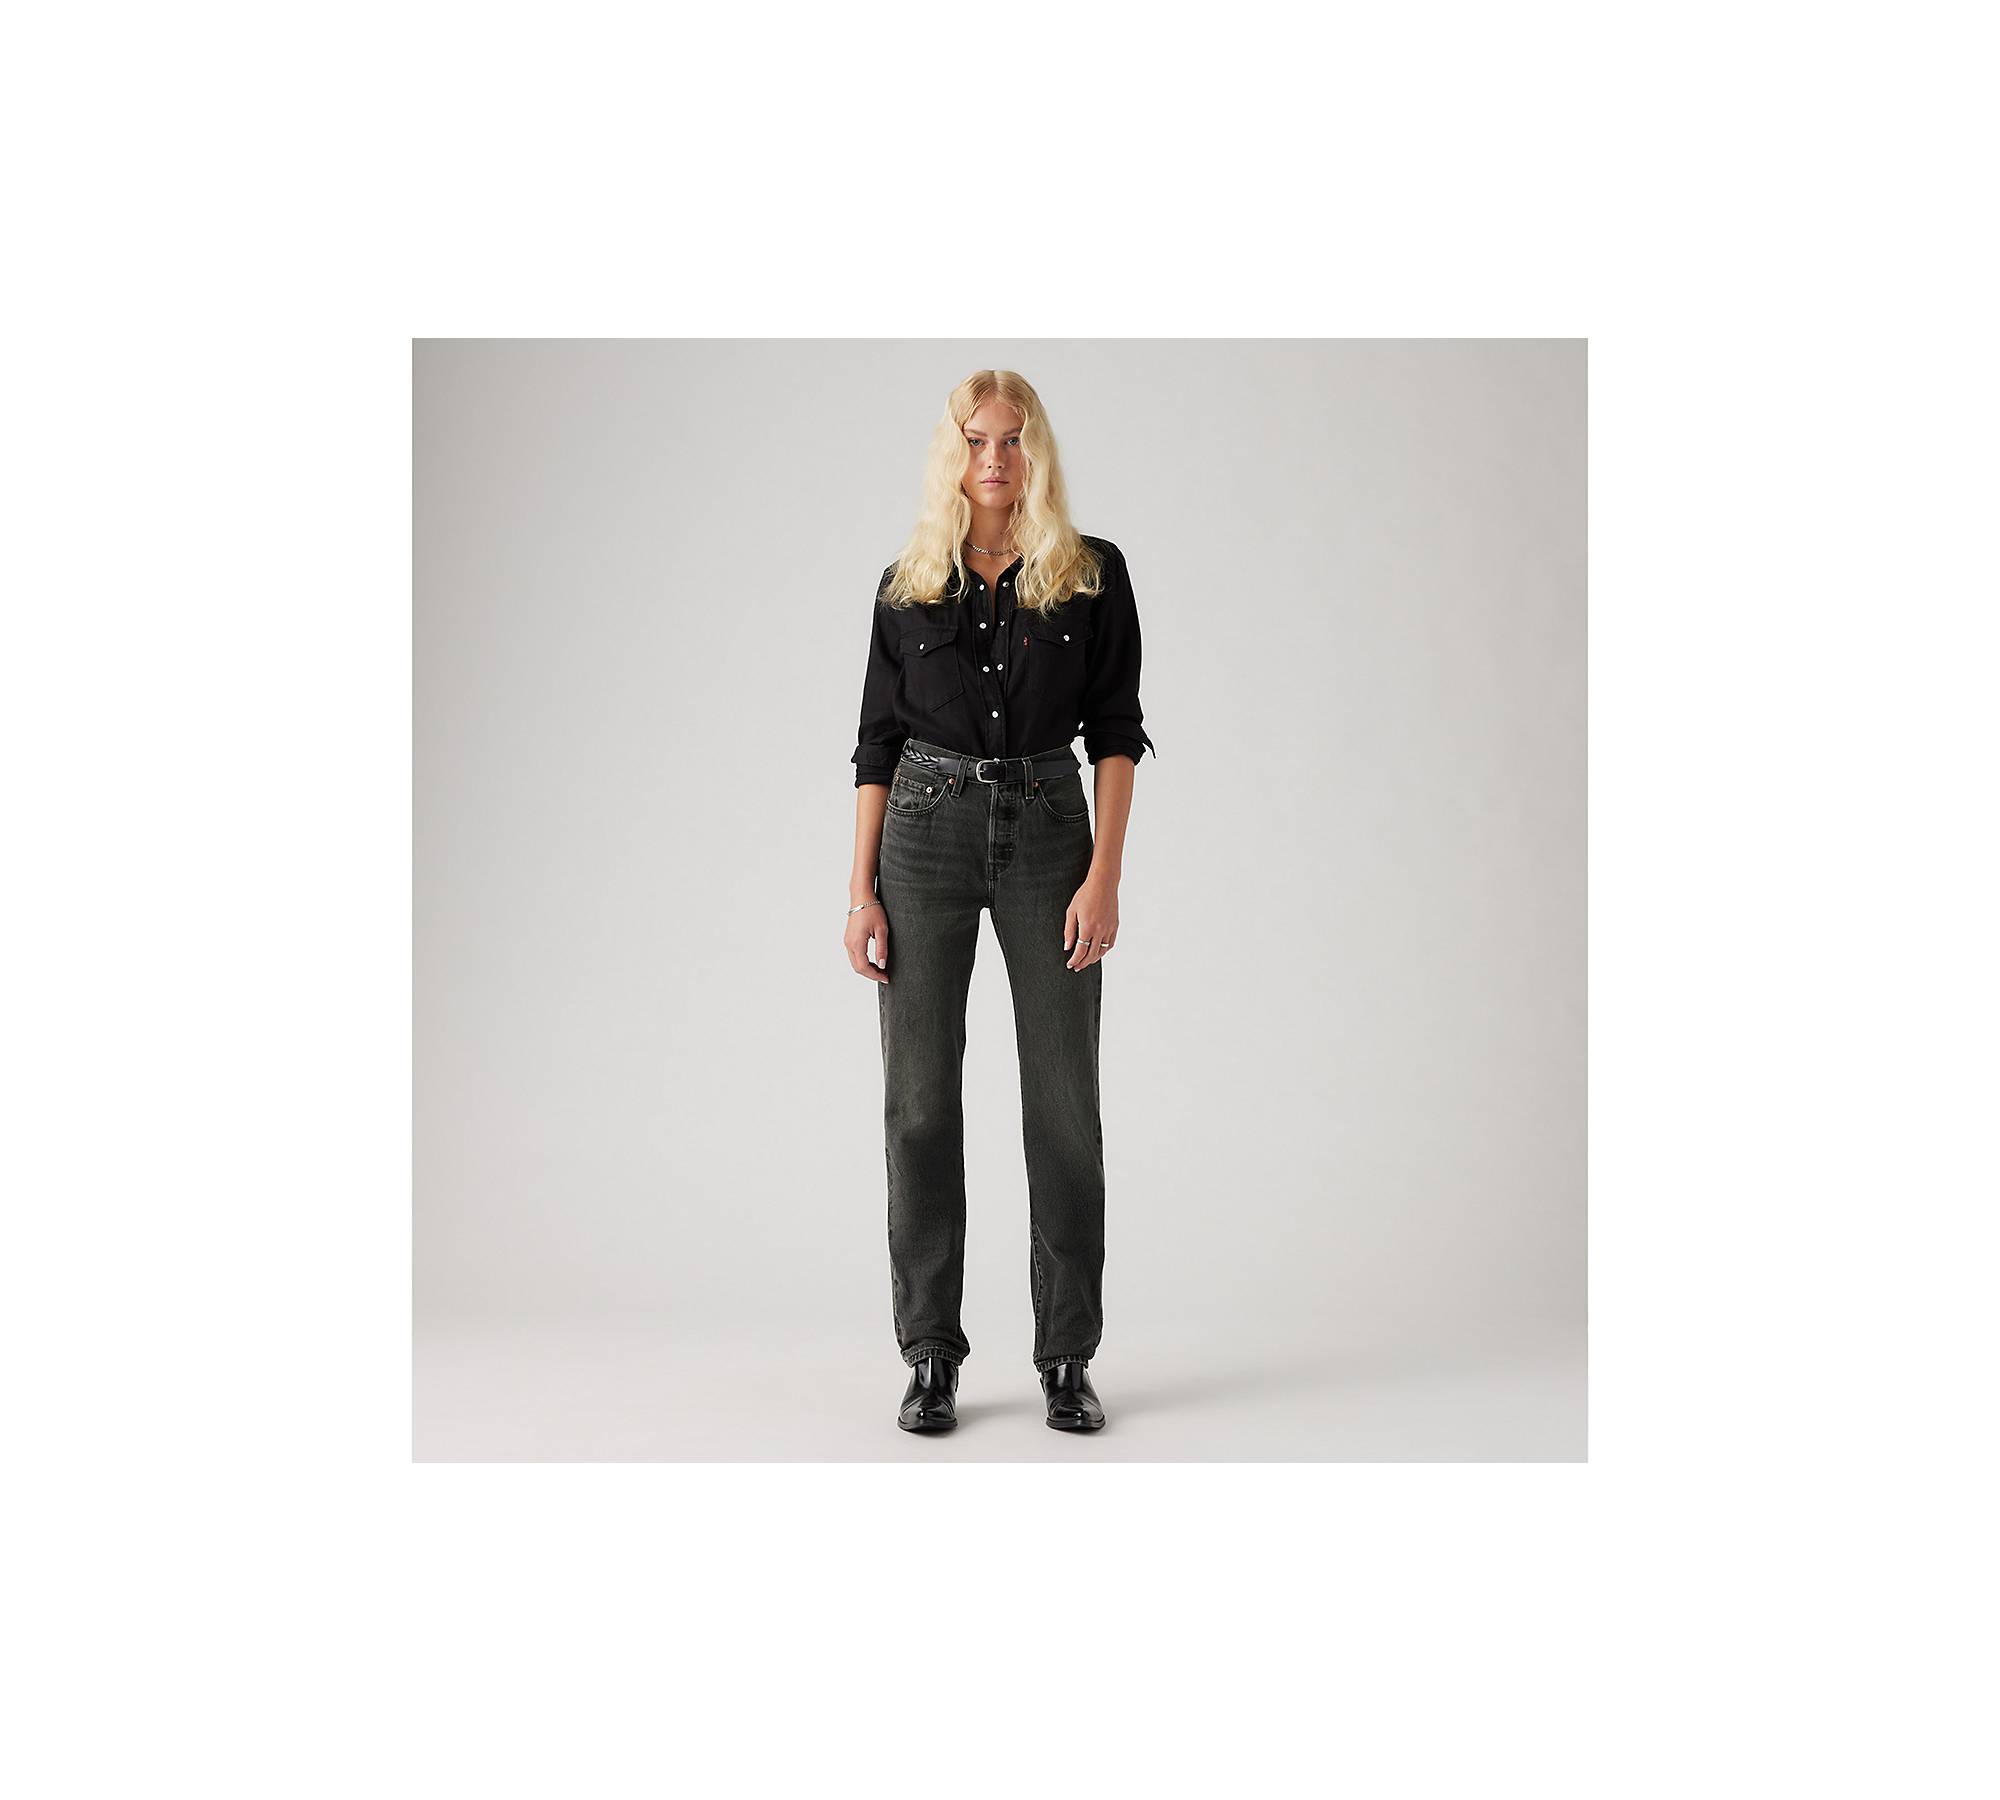 501® Original Fit Women's Jeans - Black